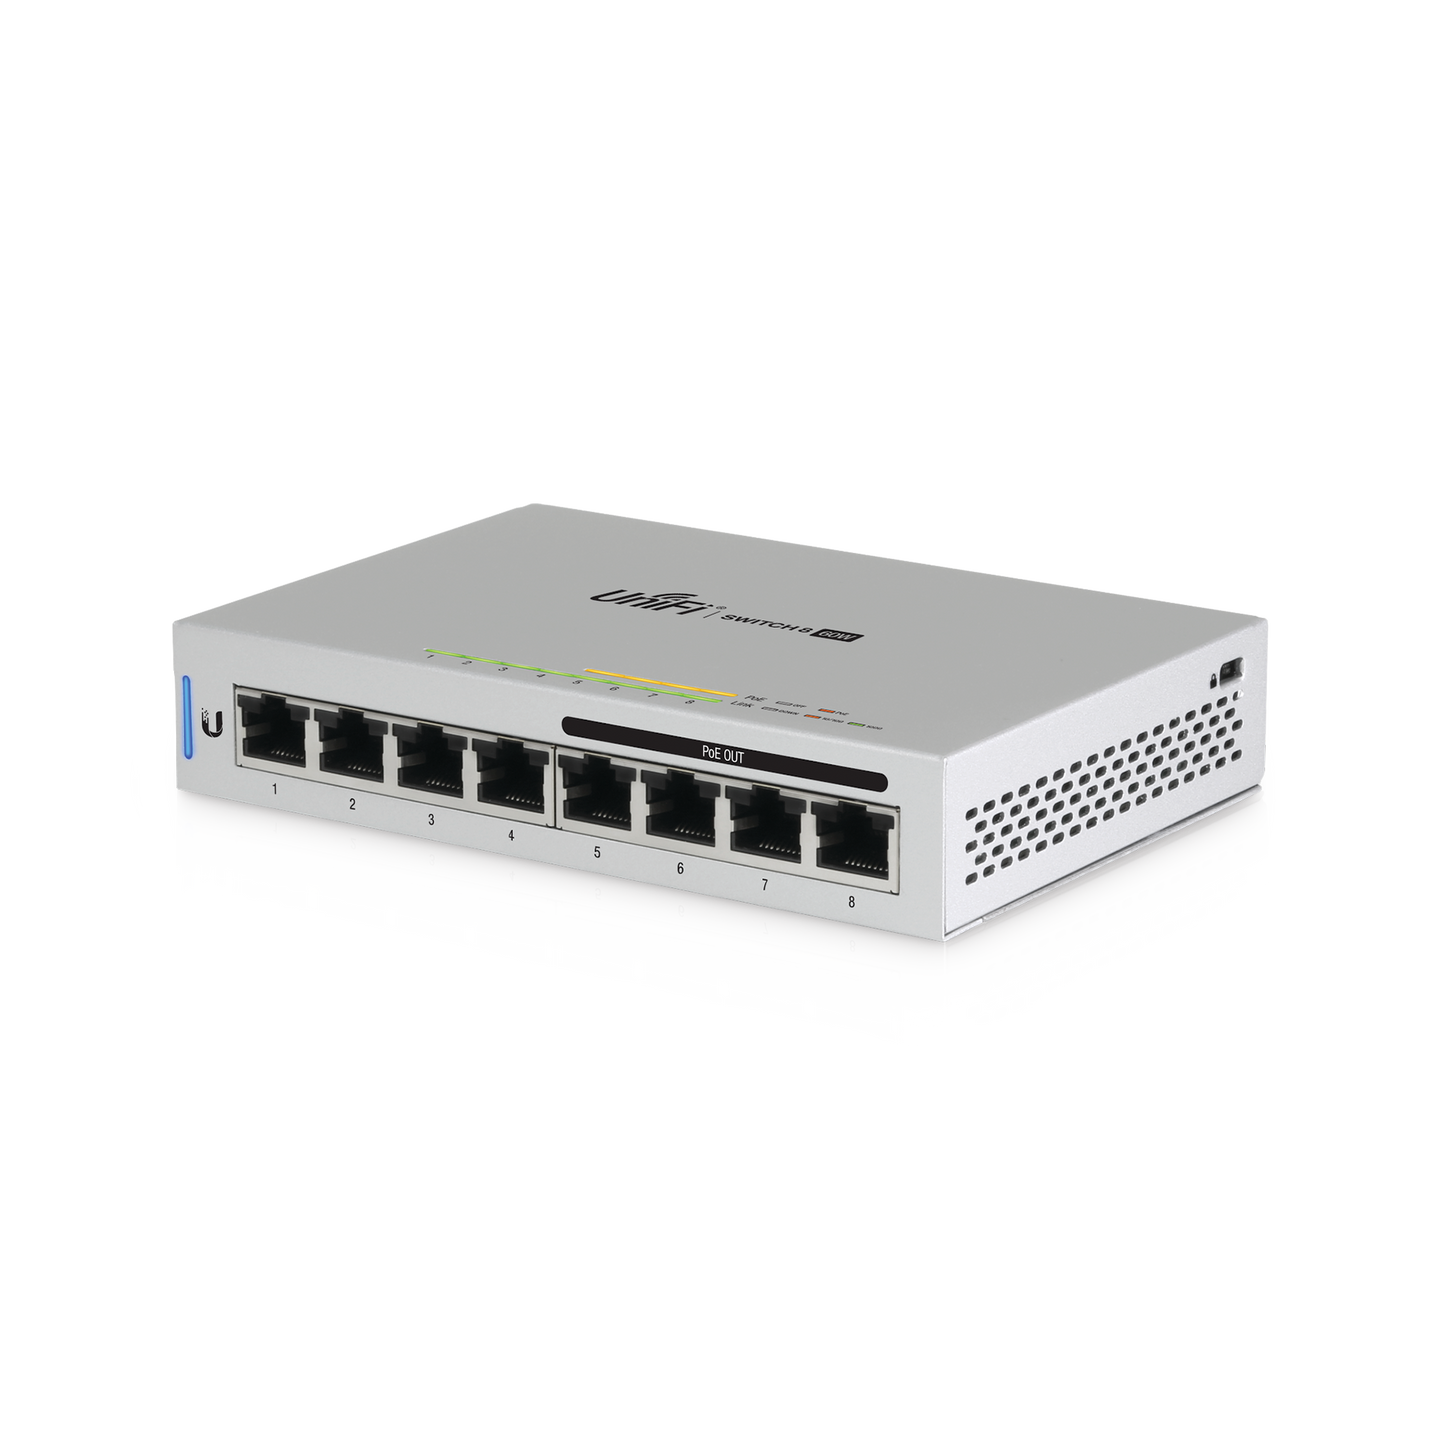 Switch UniFi Administrable capa 2 de 8 puertos Gigabit (4 Puertos Gigabit PoE 802.3af y 4 puertos Gigabit ethernet) 60W